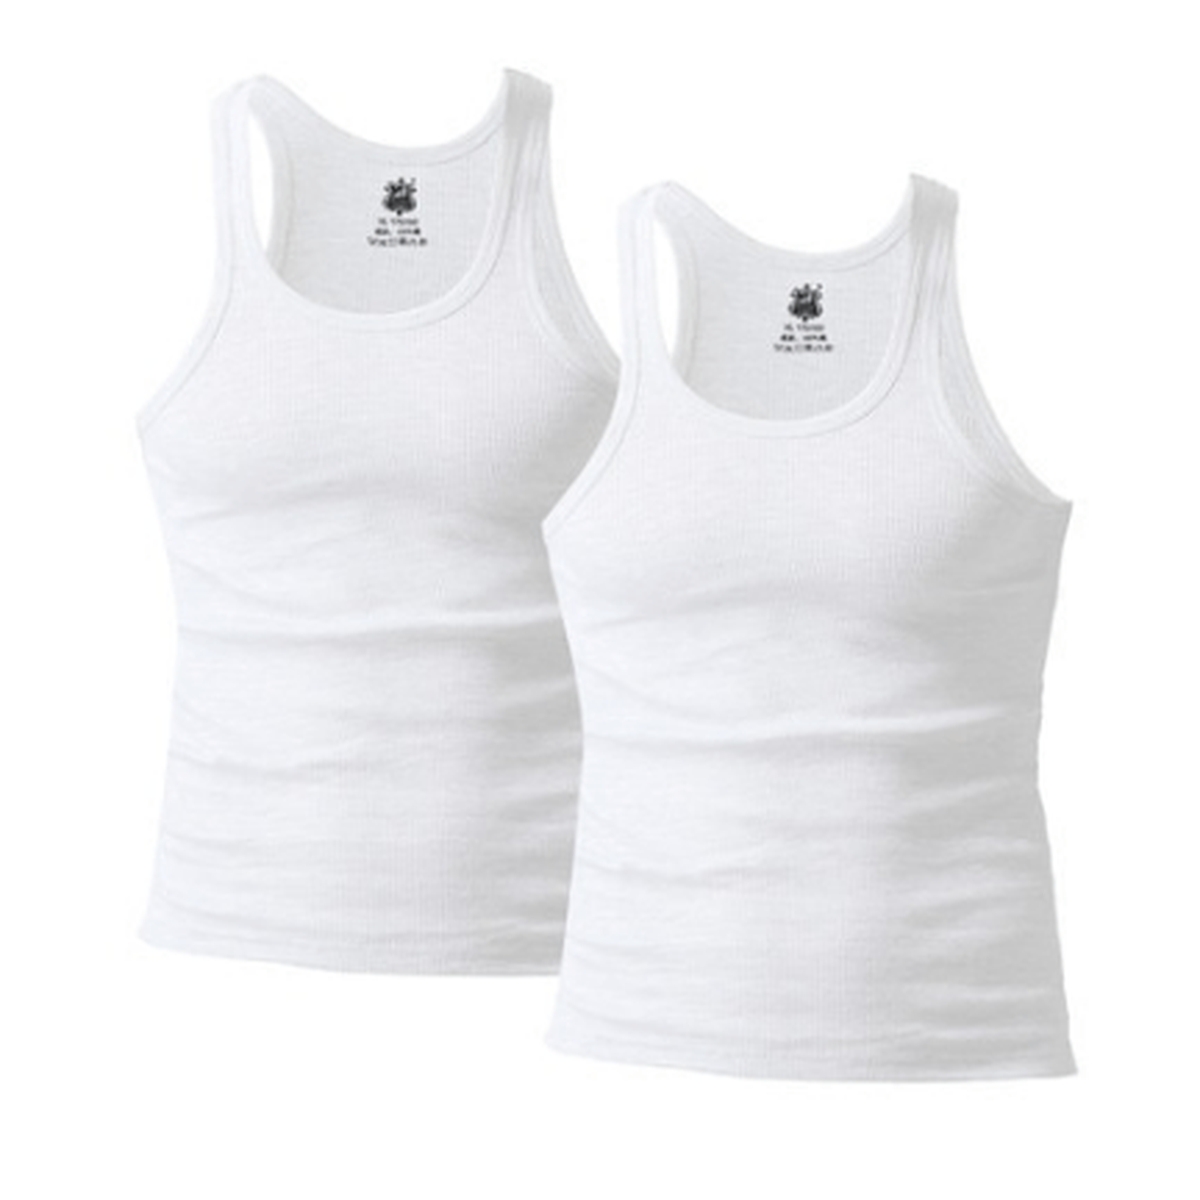 🇺🇸 PACK 2 Unidades: Camiseta Regata Americana Branca Cavada